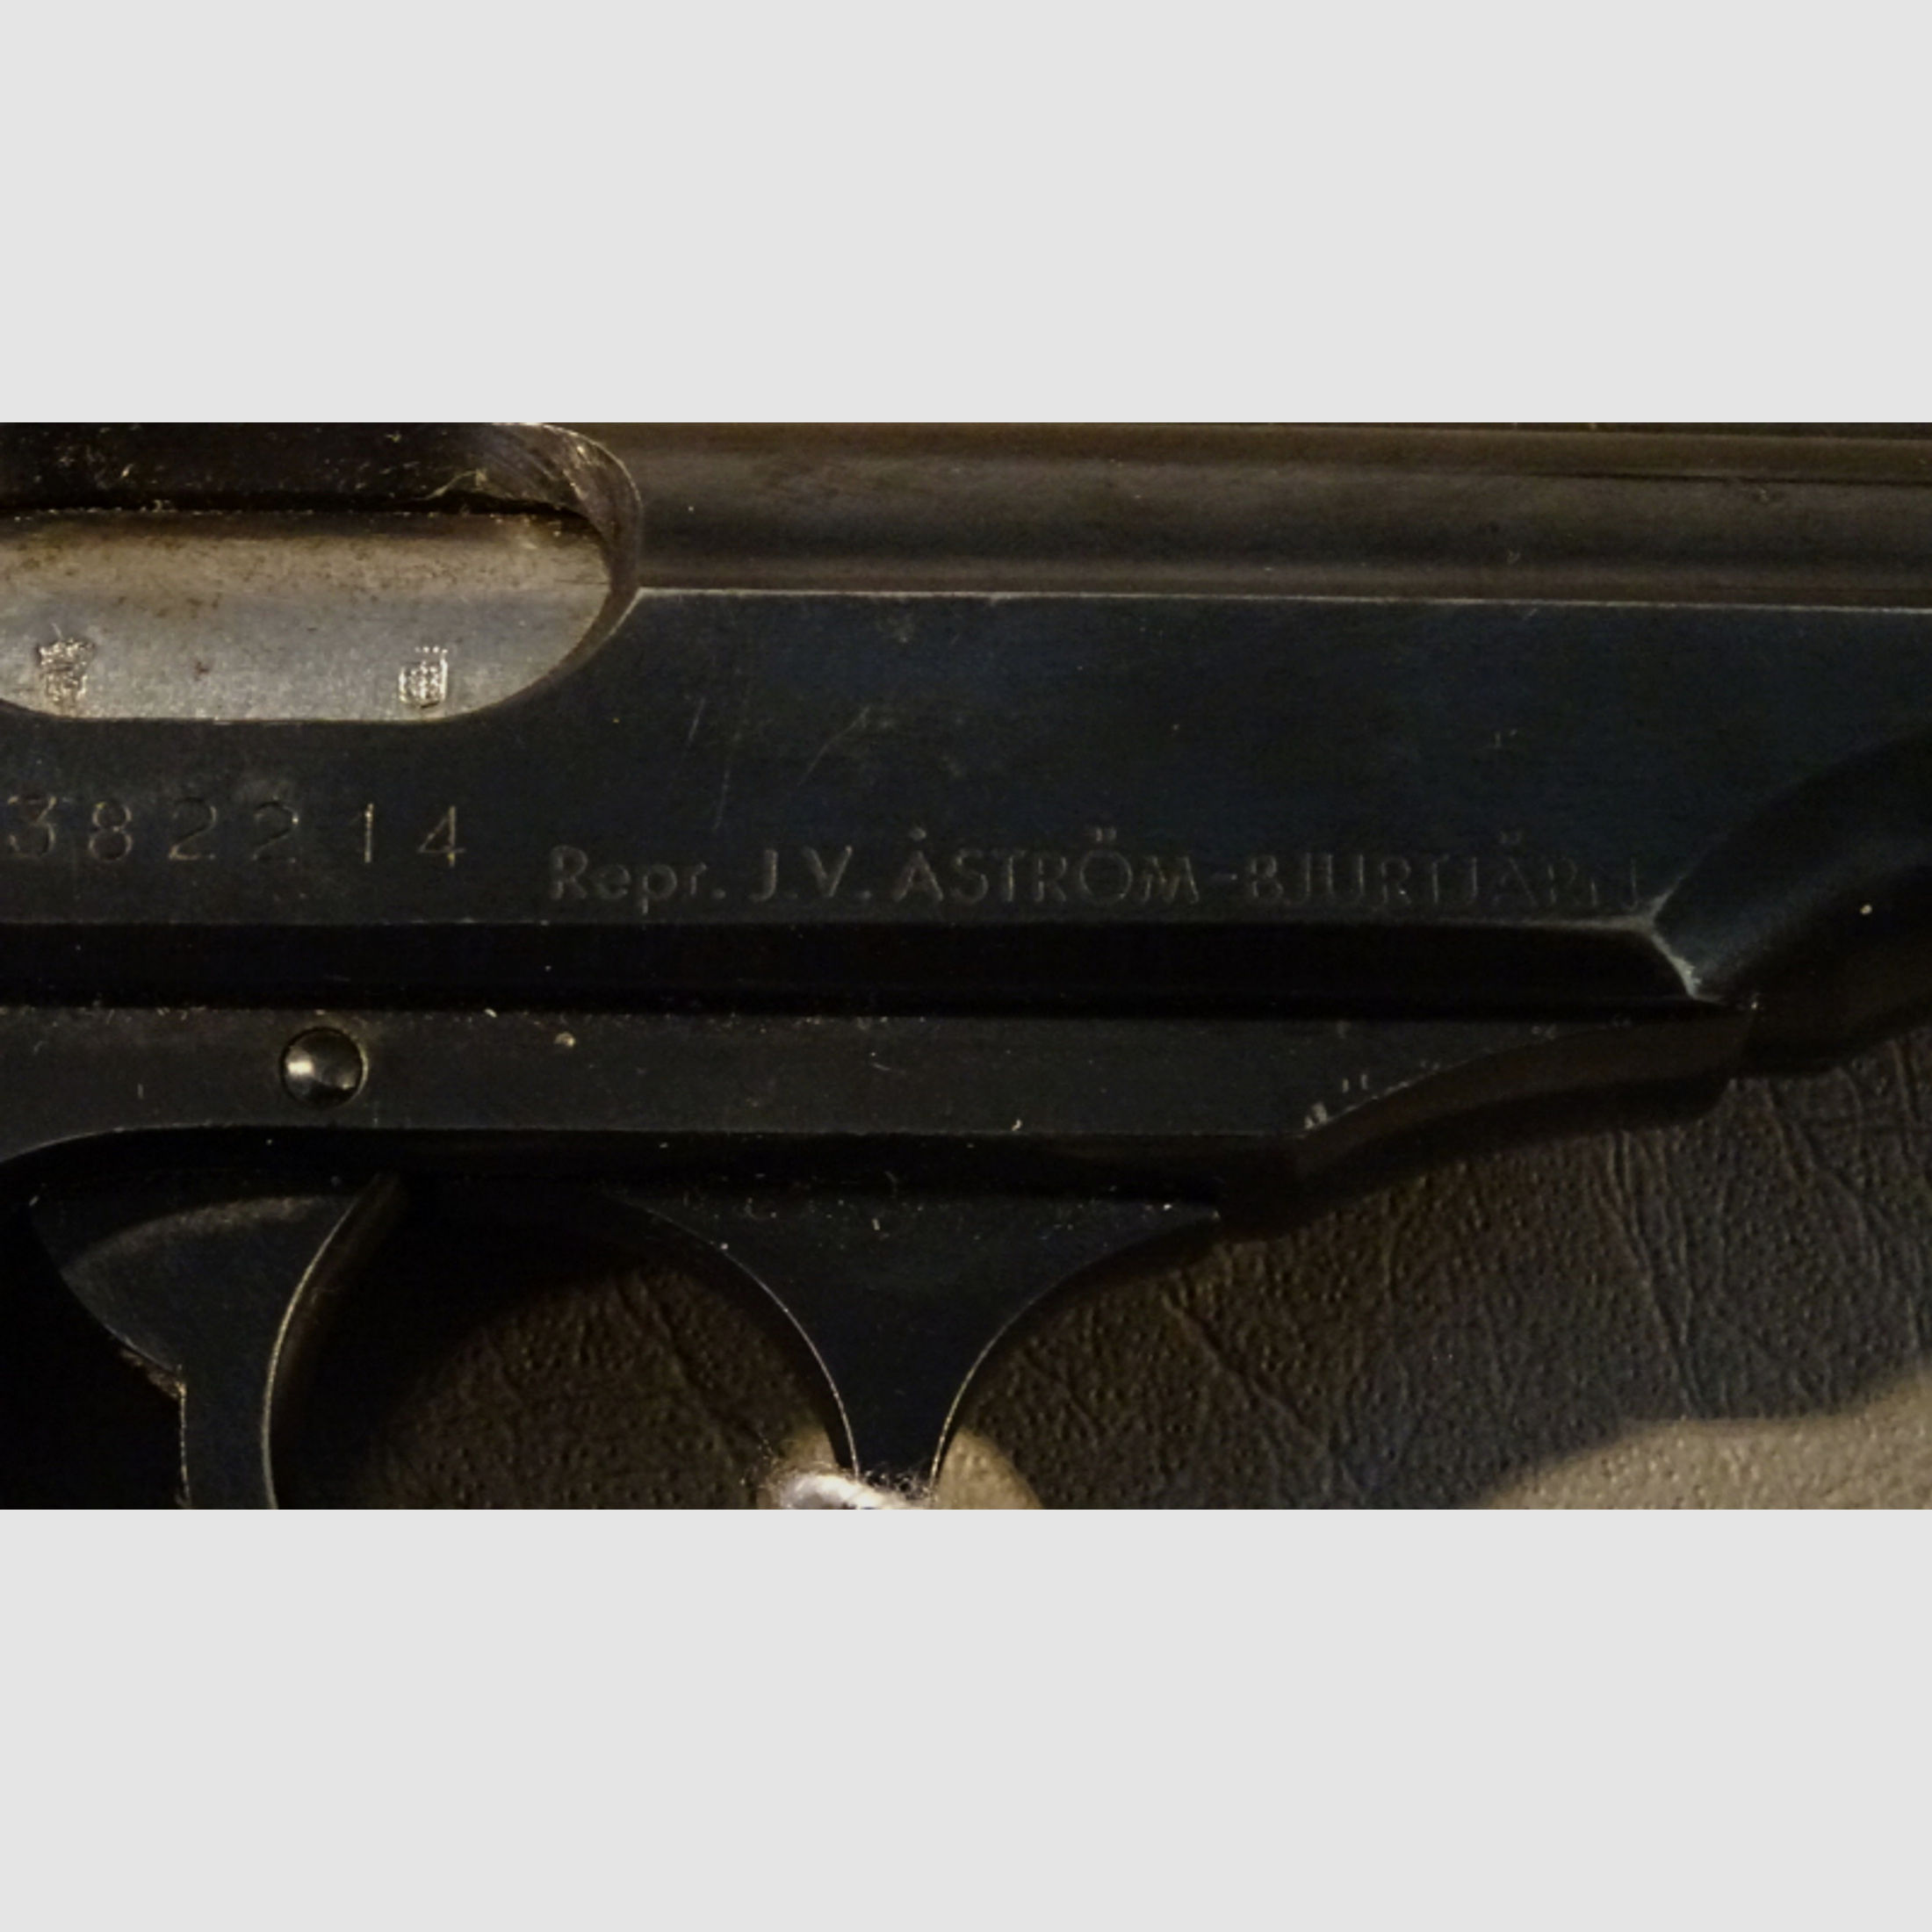 Walther- Manurhin PP ( Schwedische Behörde ). Kal. 7,65 mm.